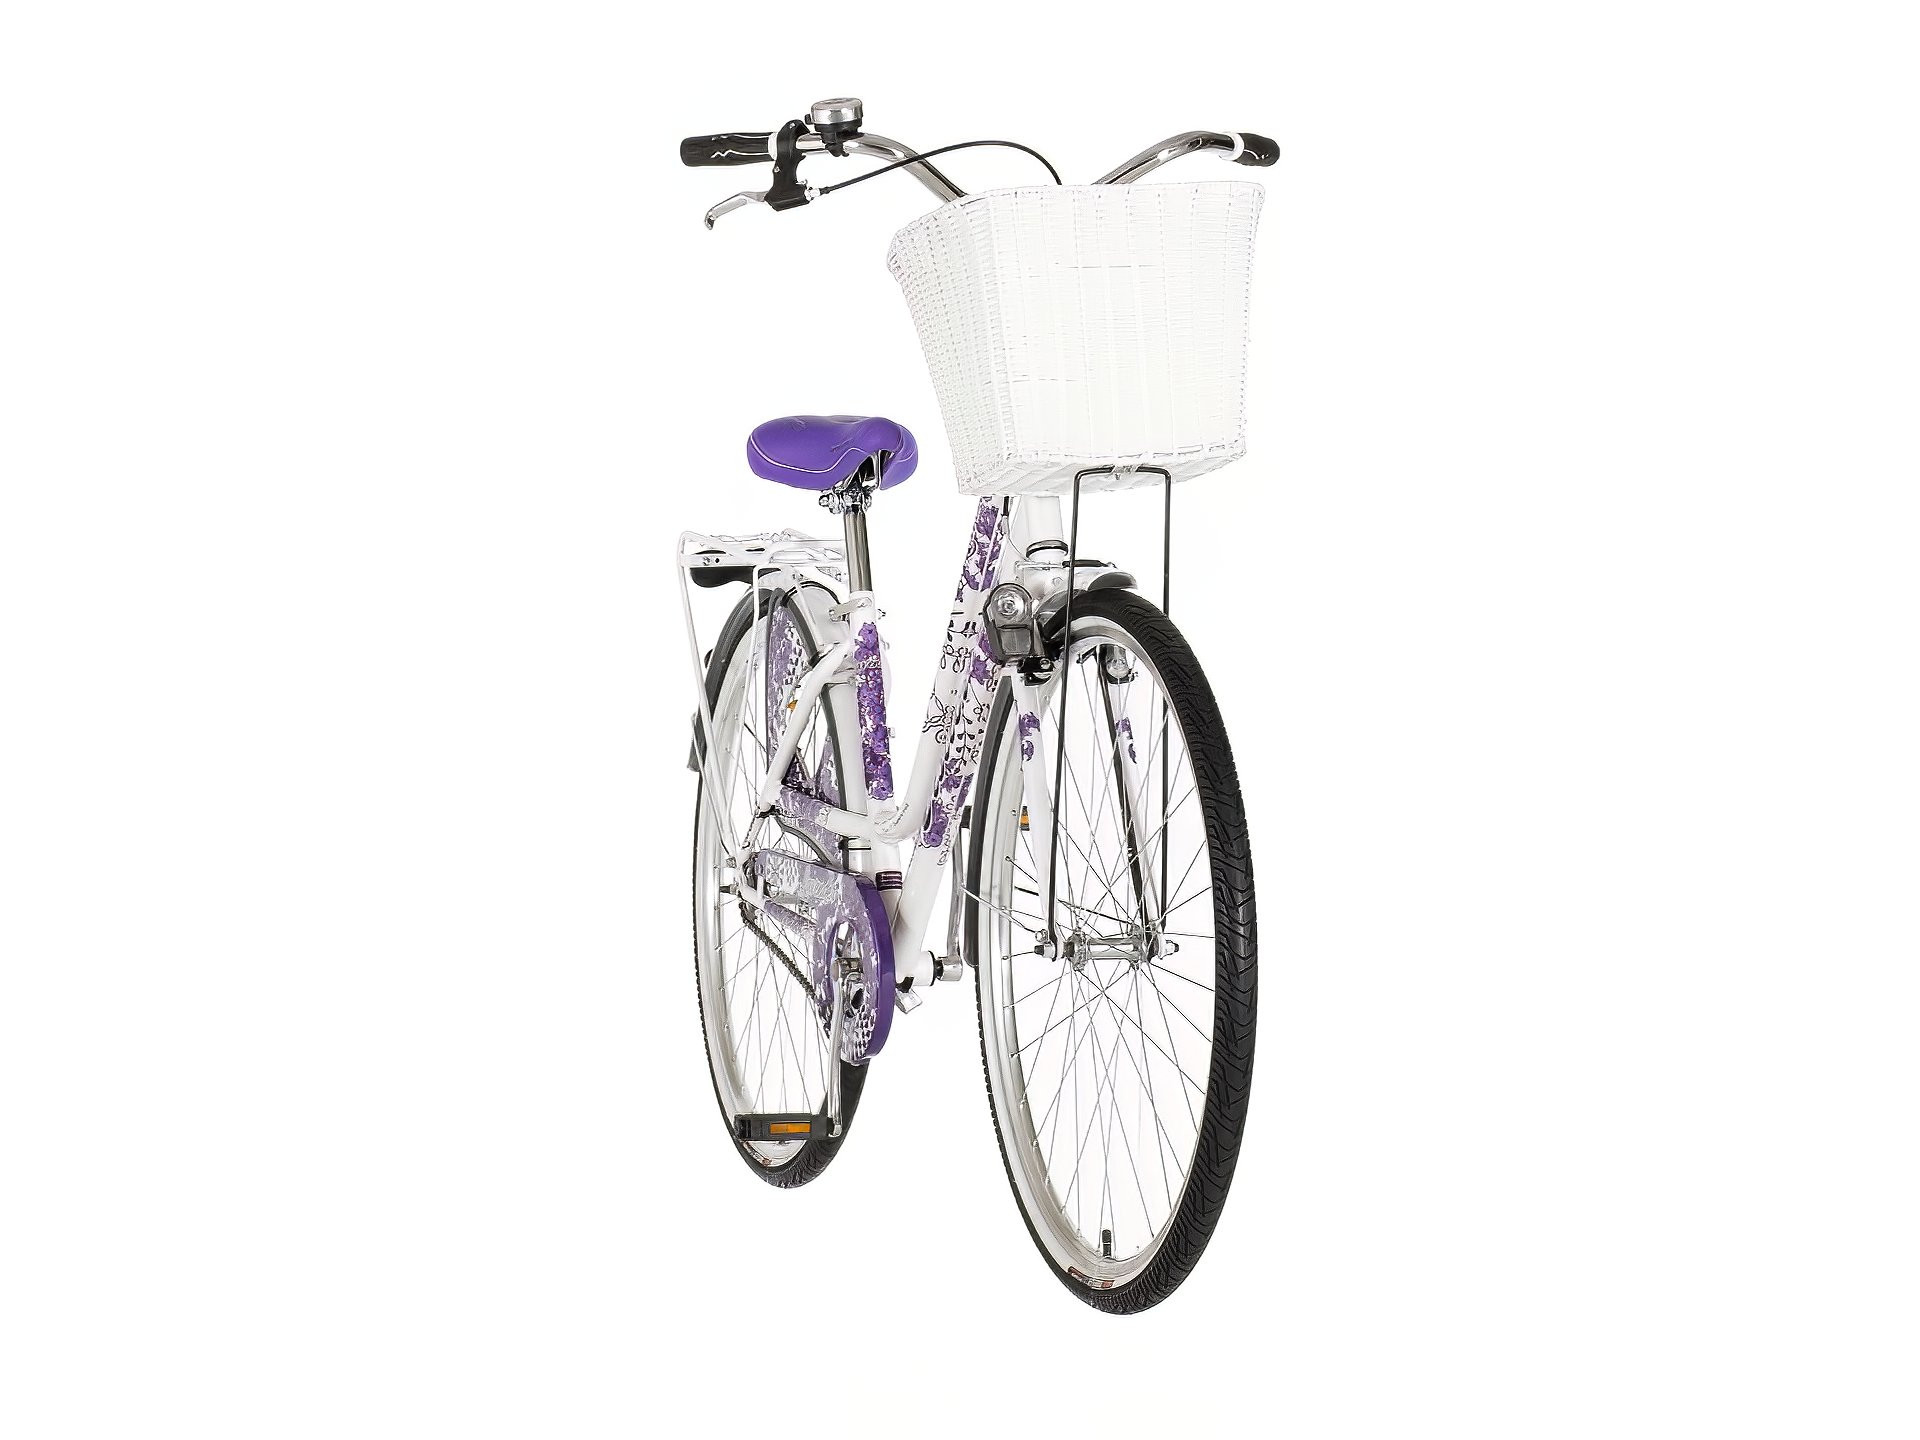 Belo ljubičasta lavender ženska bicikla -fas2810f